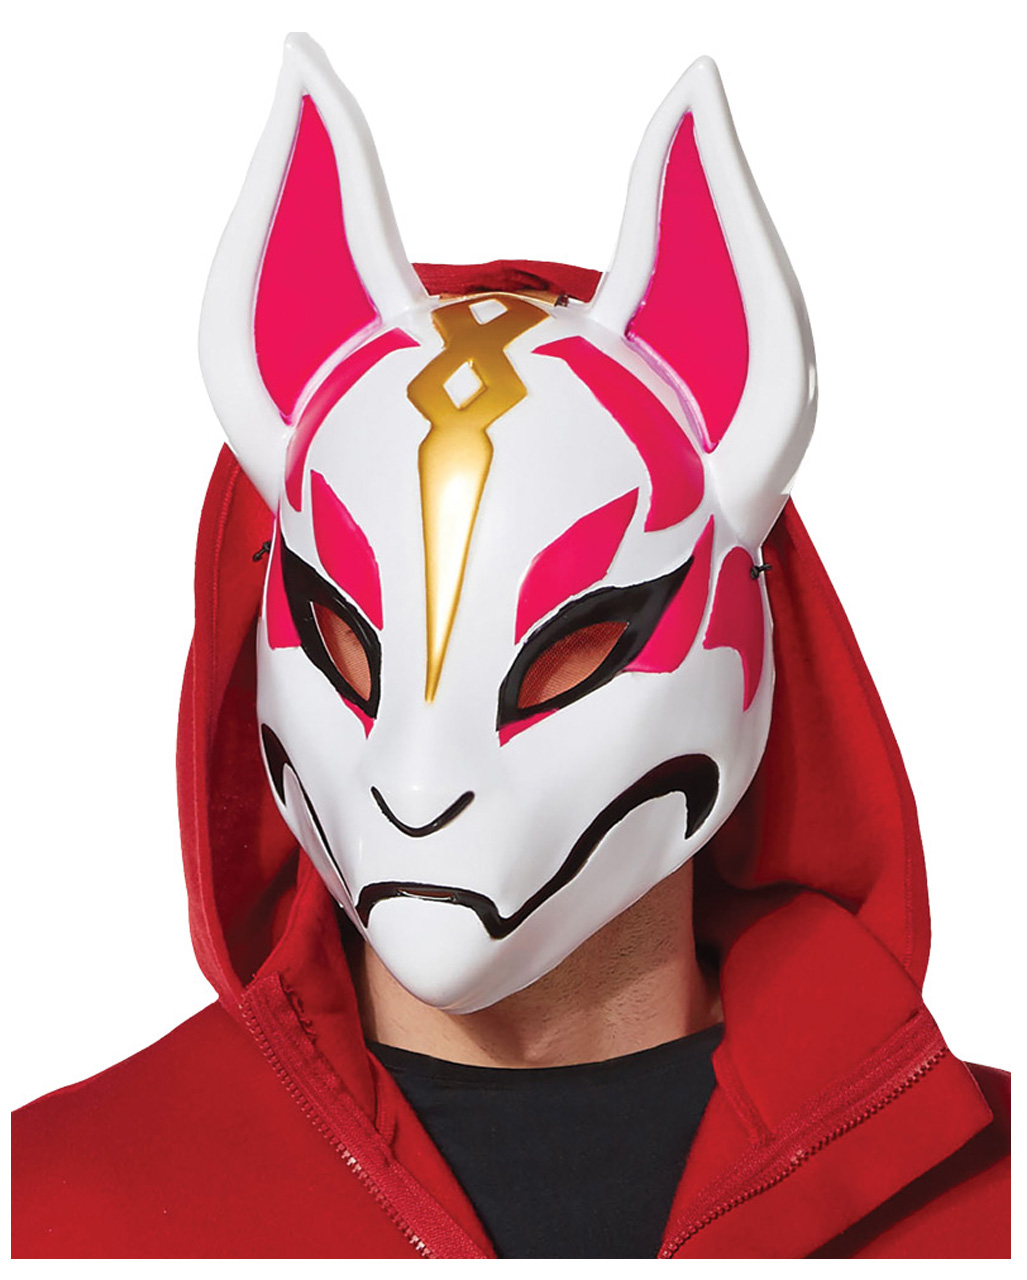 Fortnite Drift Mask, Fortnite Costume Accessories